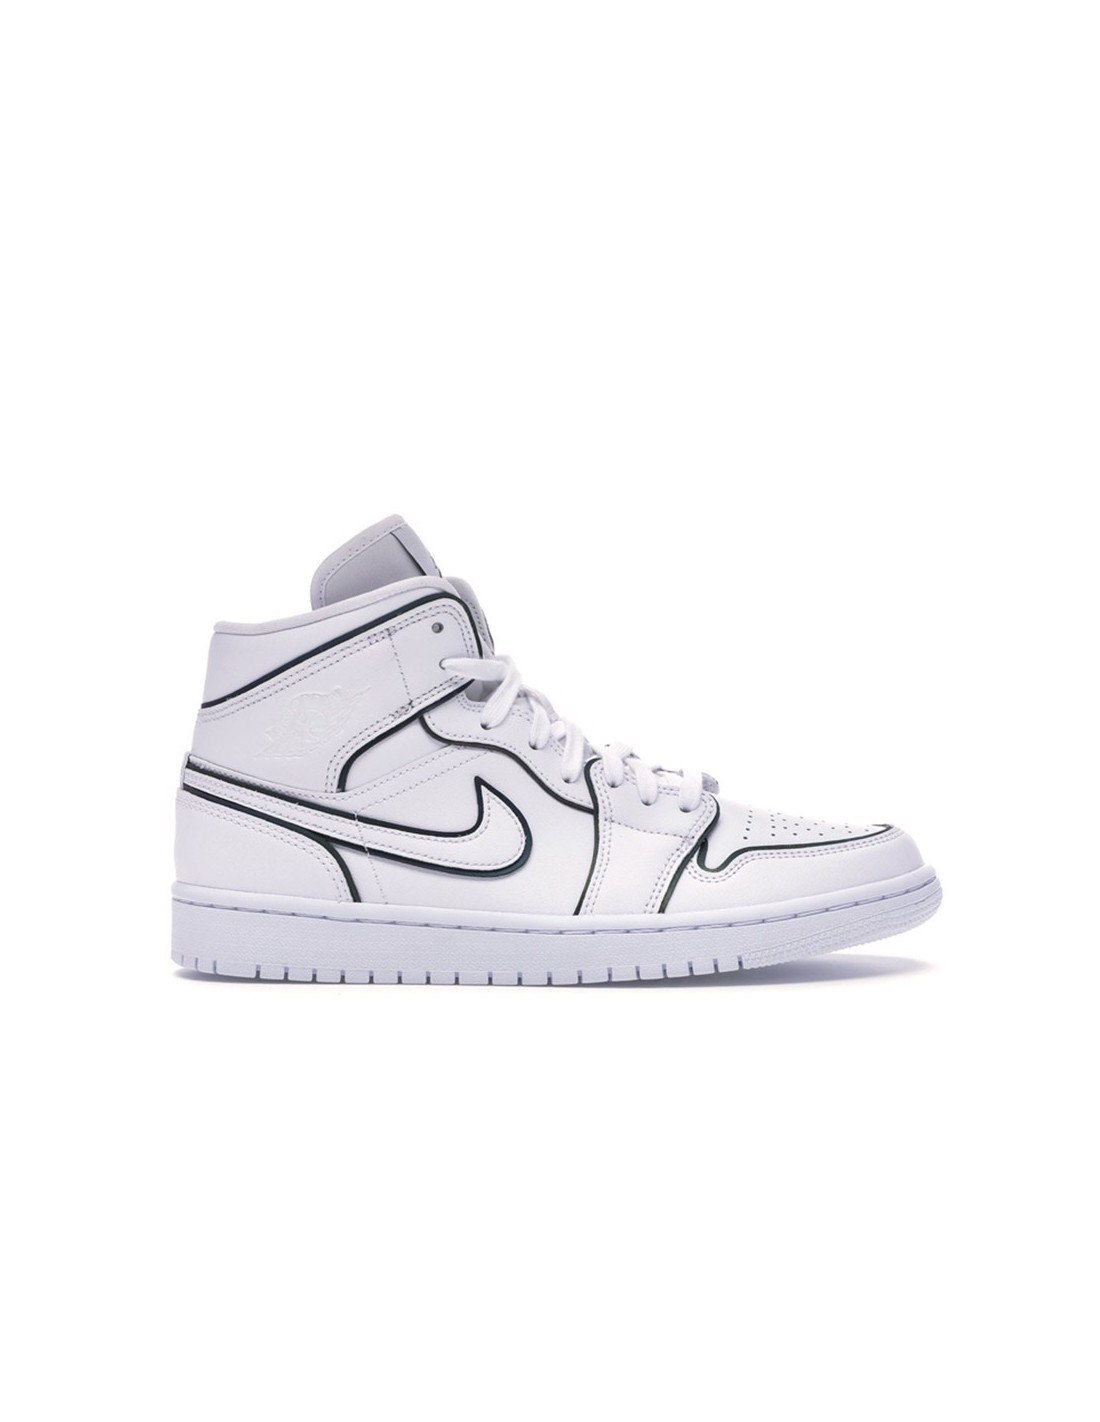 Maligno vídeo Escalofriante Nike Air Jordan 1 MID Blancas Reflectantes